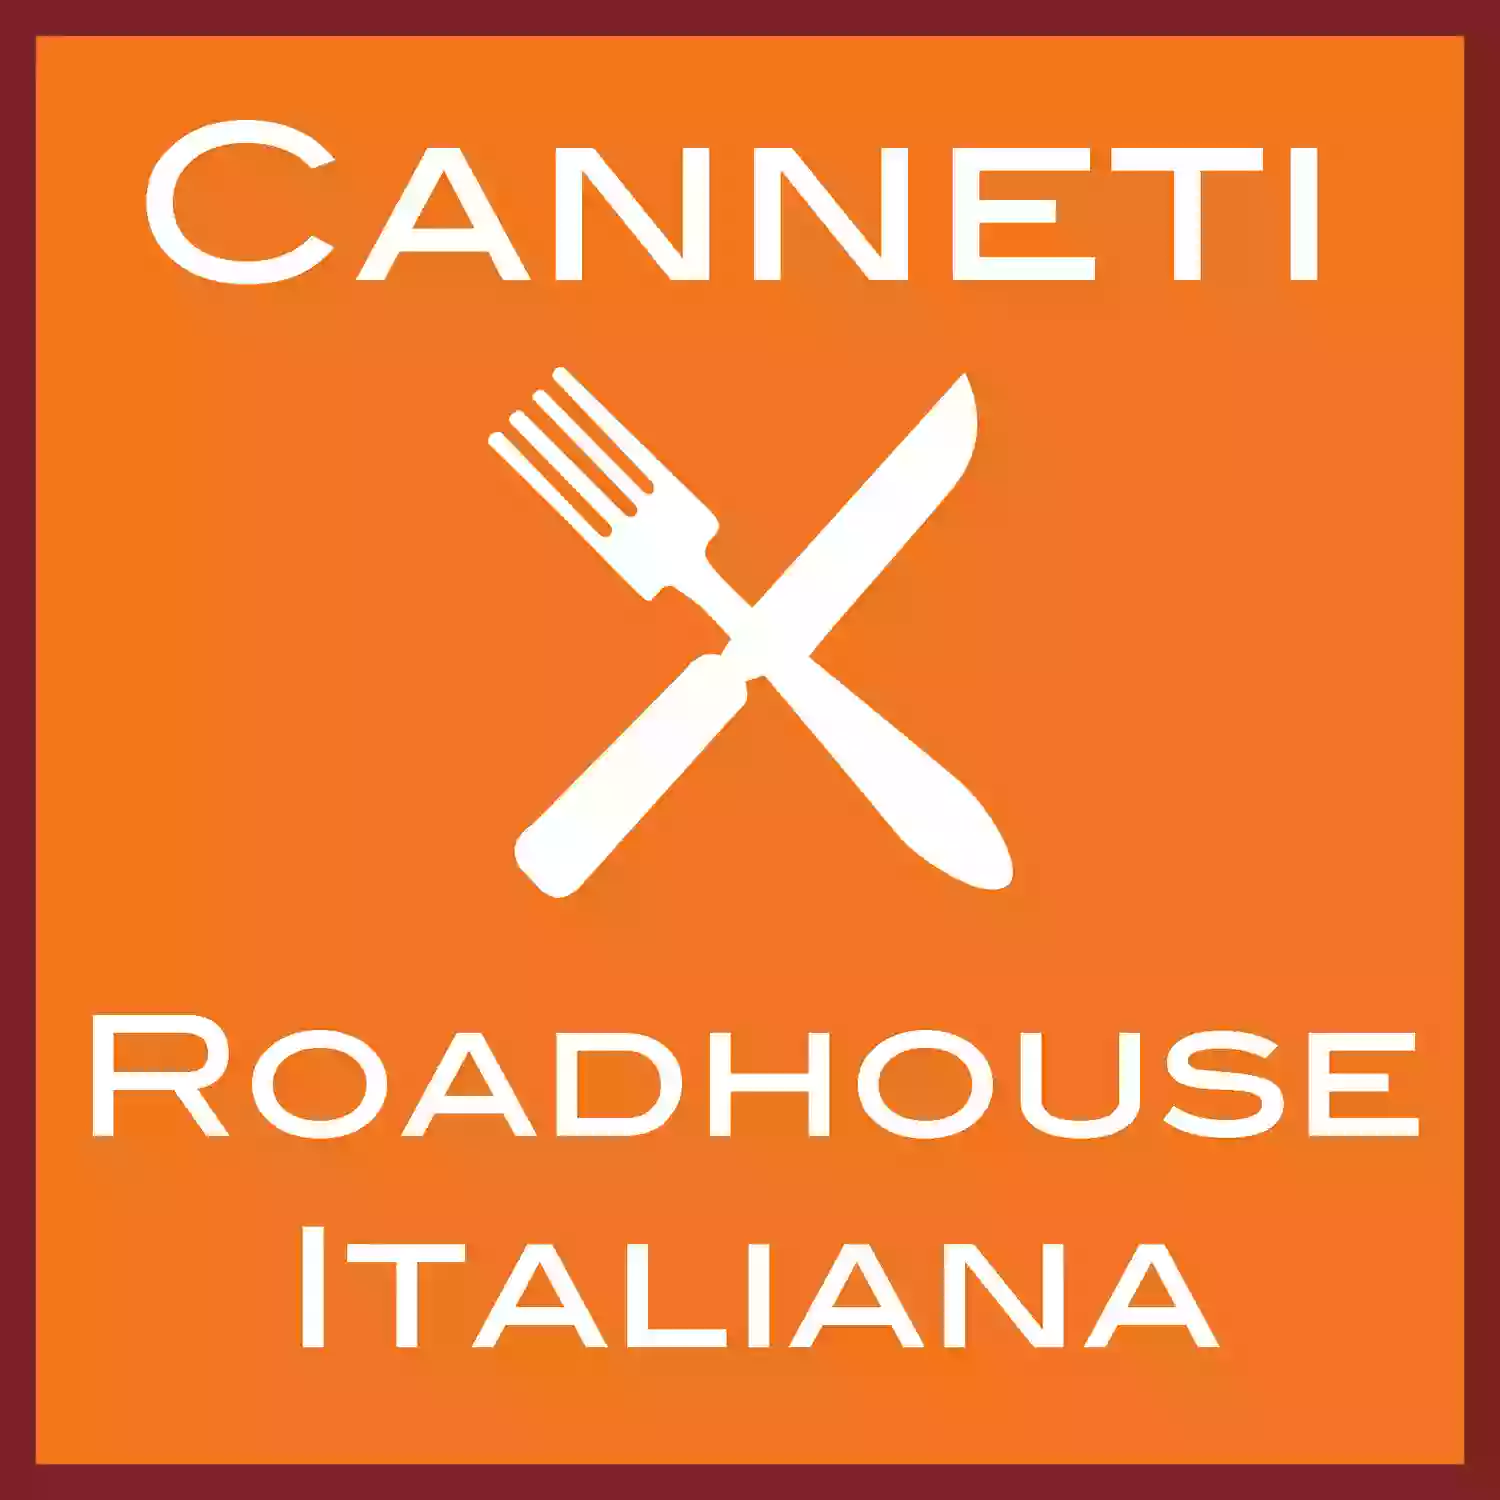 Canneti Roadhouse Italiana